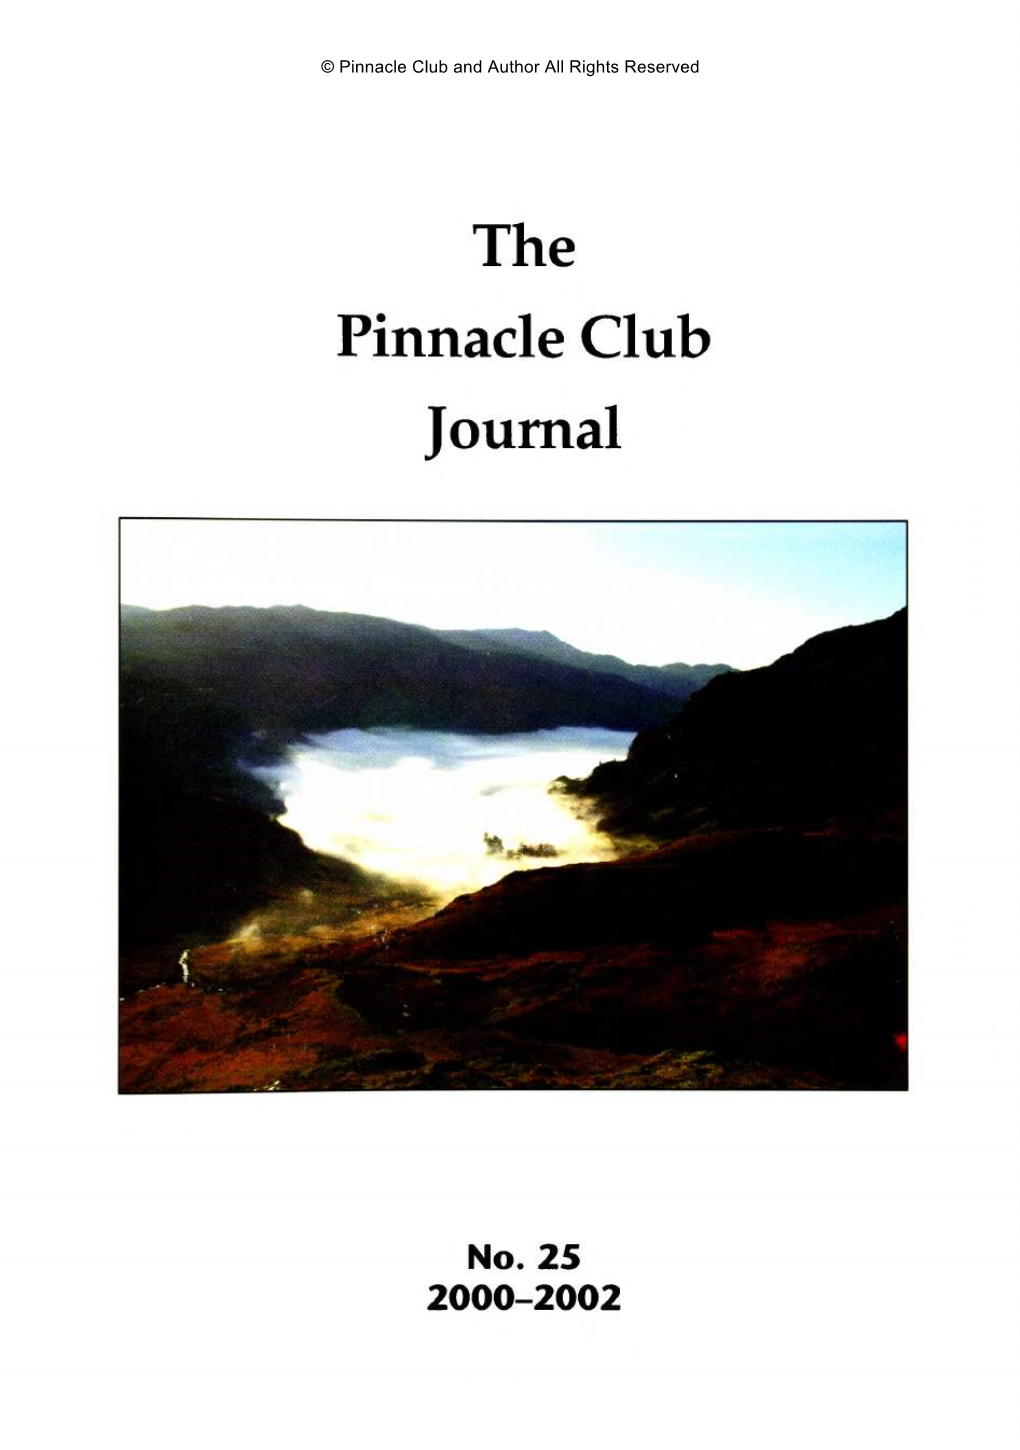 The Pinnacle Club Journal